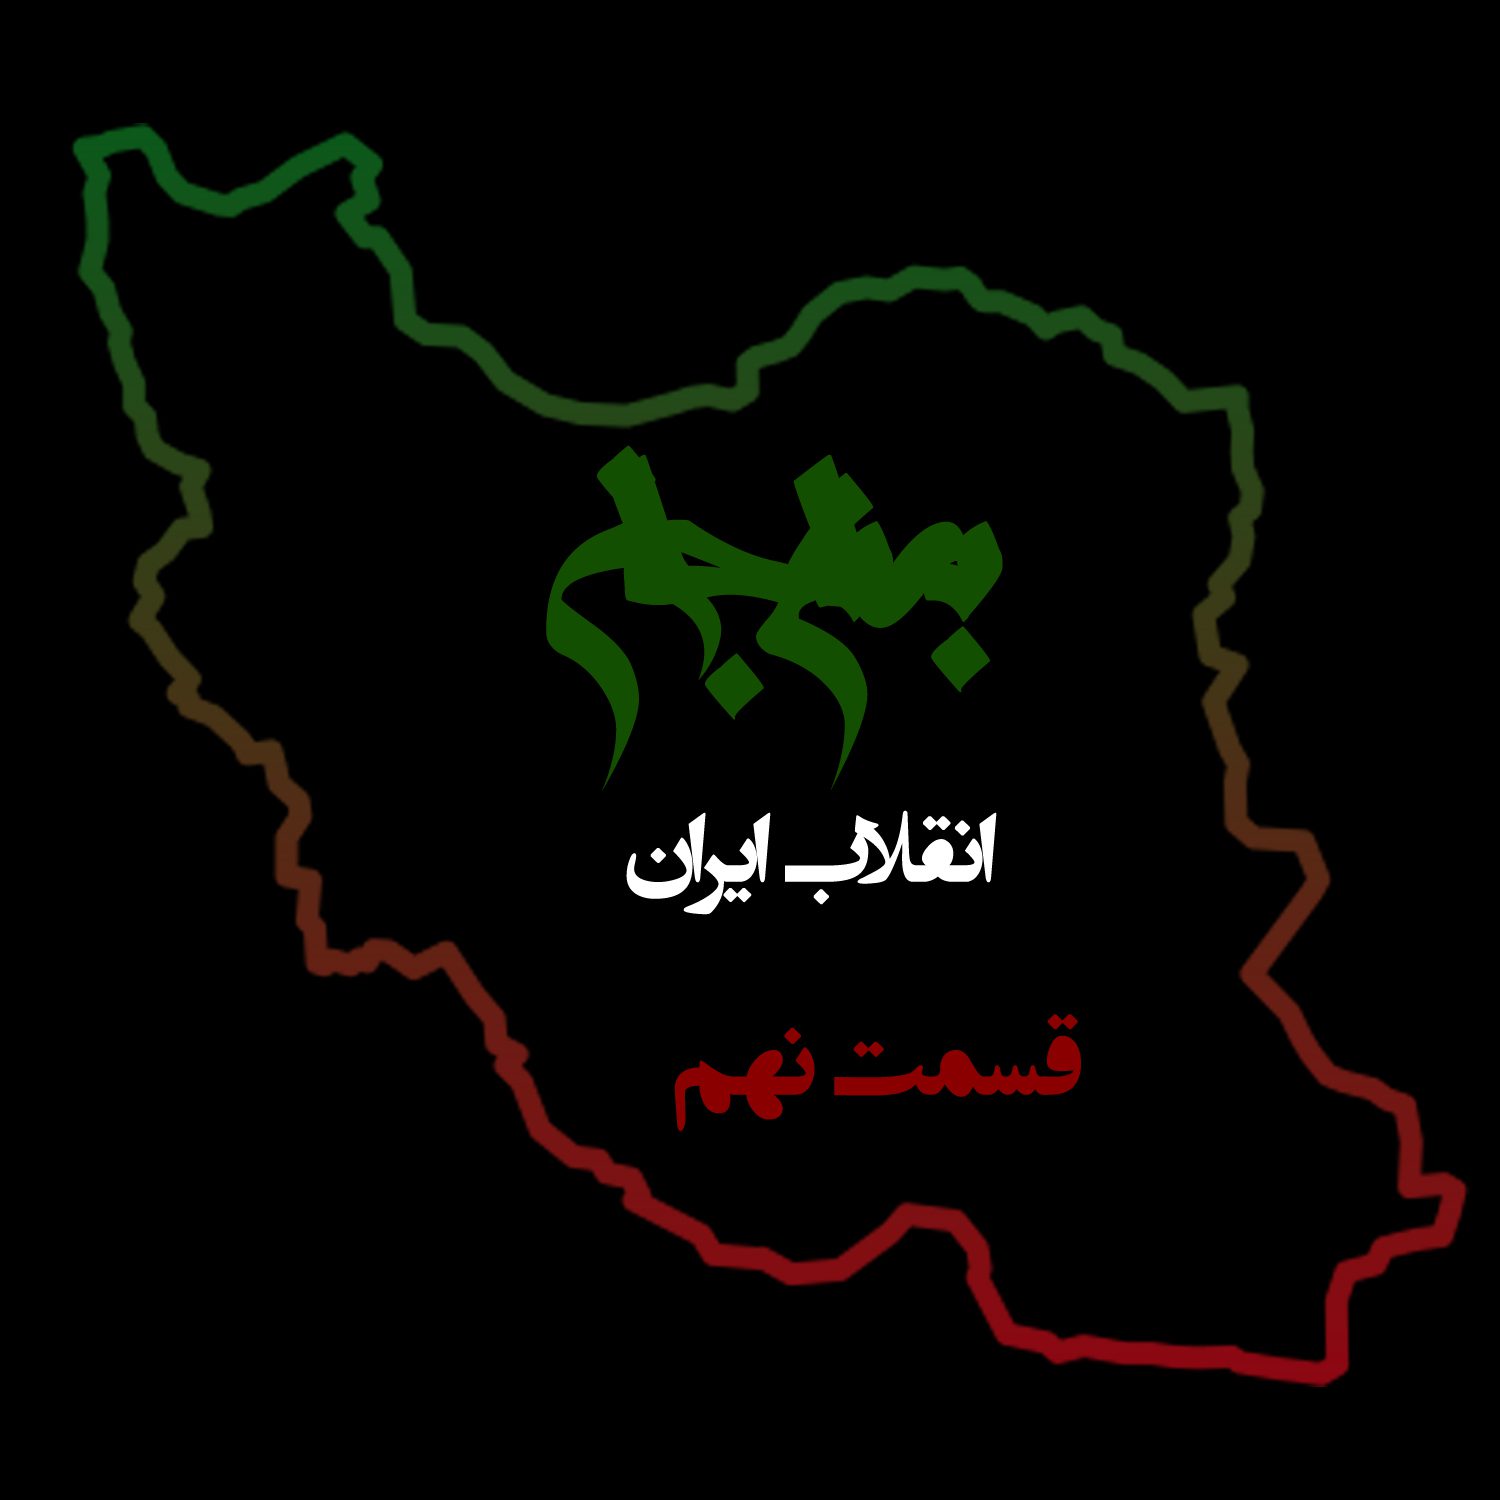 پادکست به نام جان - ویژه برنامه انقلاب ایران - قسمت نهم دلایل شکست - با نیما شهسواری